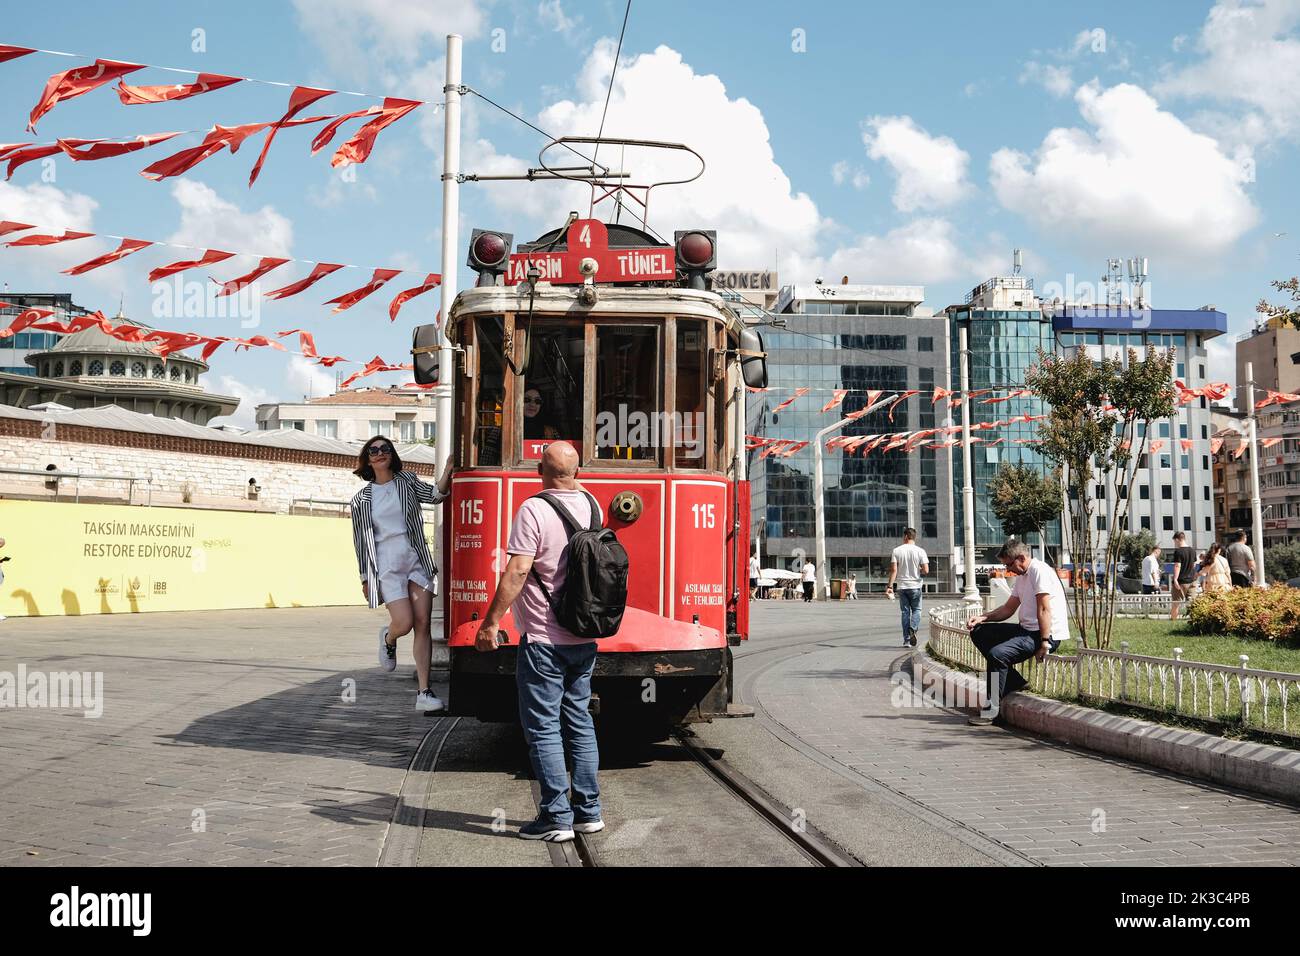 Personnes prenant des photos dans le tram rétro Taksim, train rouge célèbre à Istanbul, Voyage et le concept de voyage, jour ensoleillé d'été, paysage urbain sur la place Taksim Banque D'Images